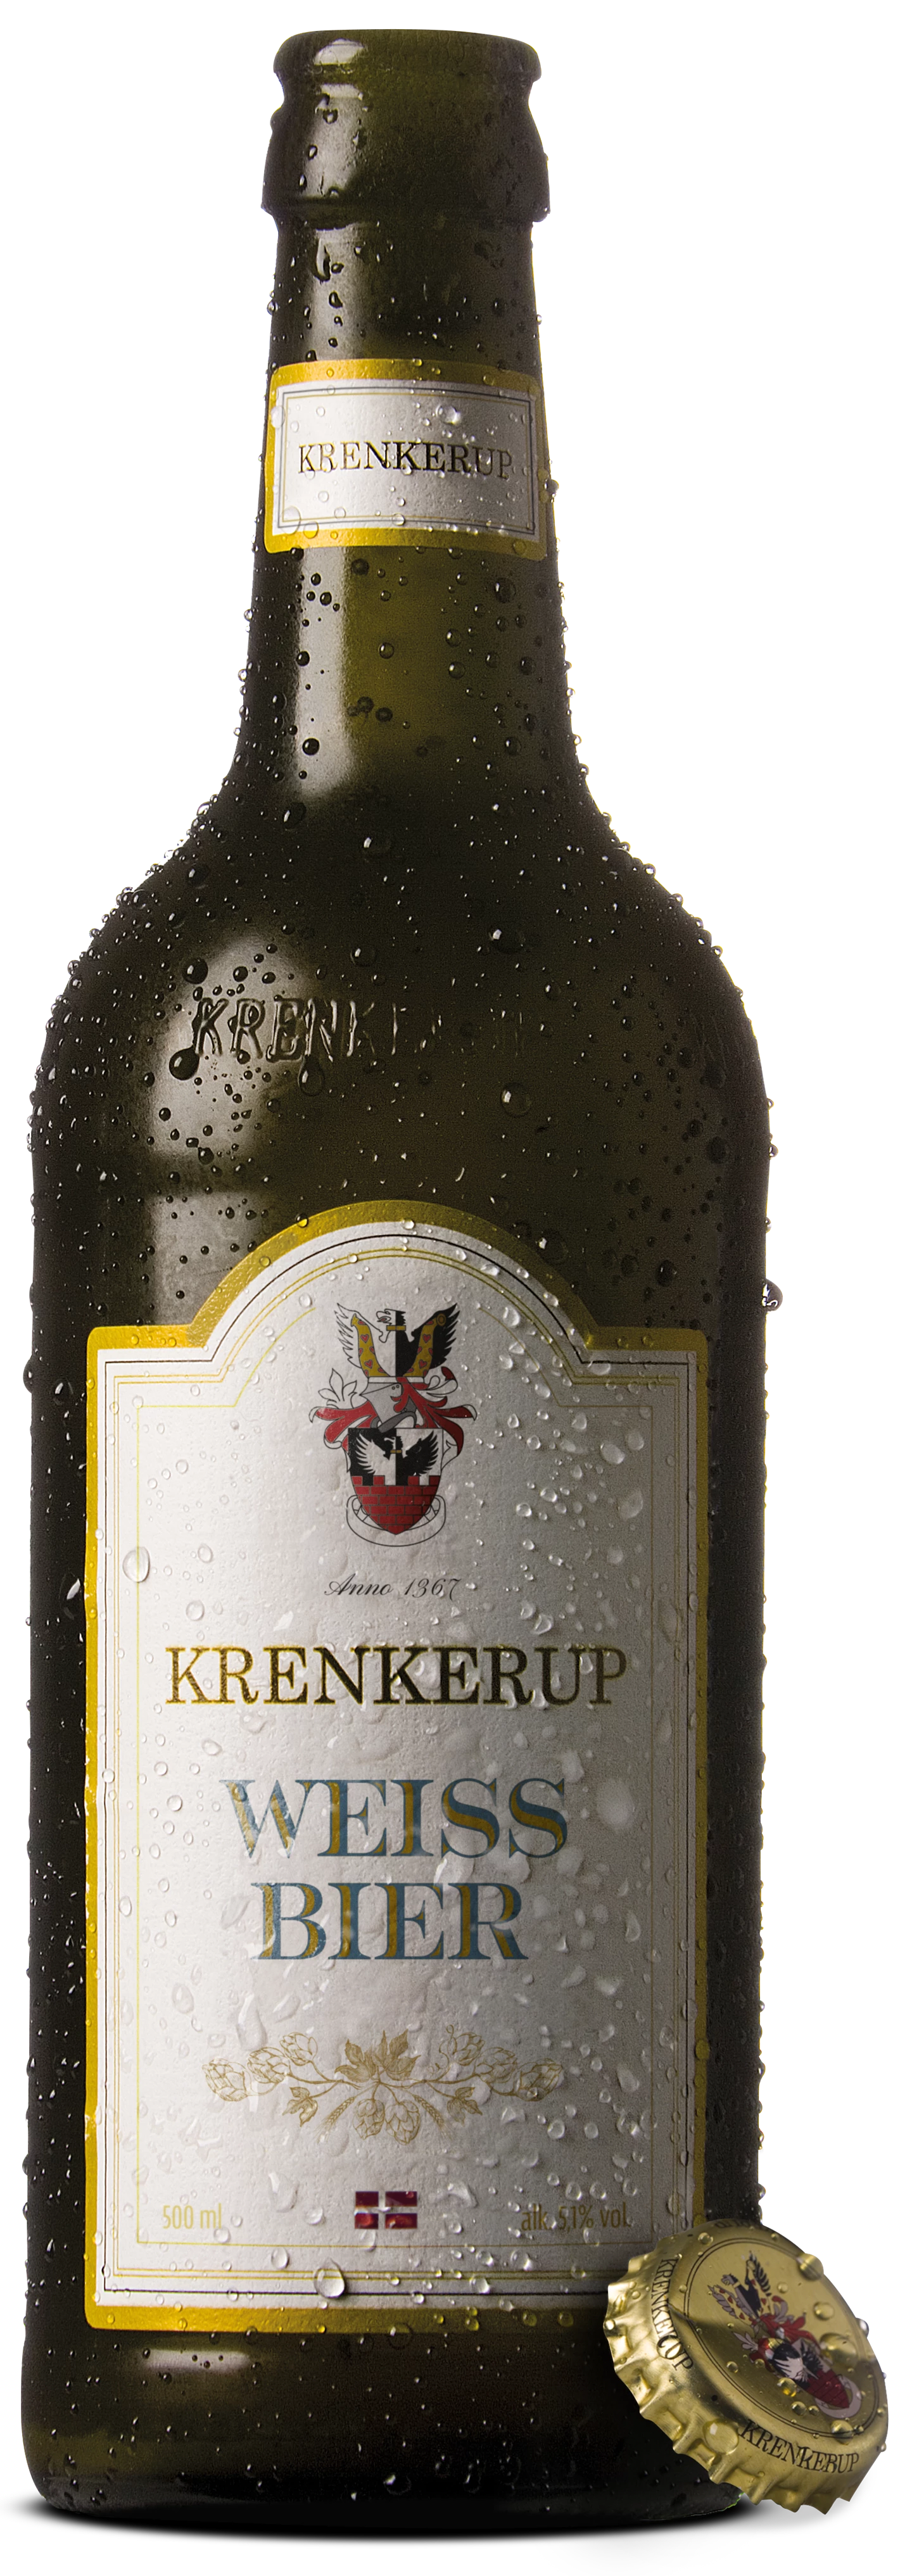 Løgismose Delikatesser Krenkerup øl Weissbier 5,1% 50cl - 200156